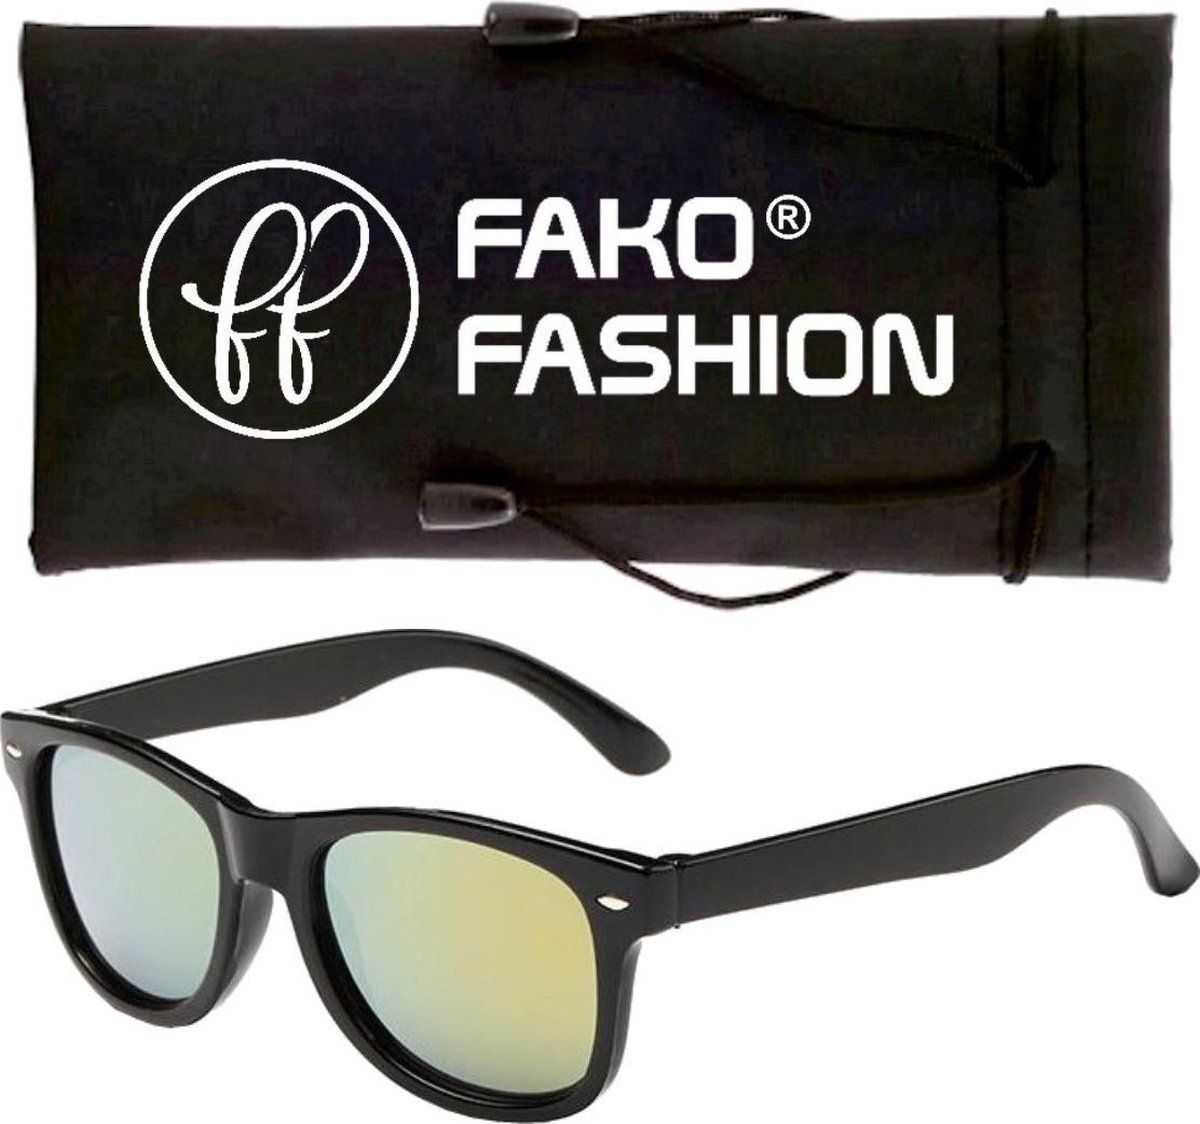 Fako Fashion® - Zonnebril - Kids - Spiegel Goud